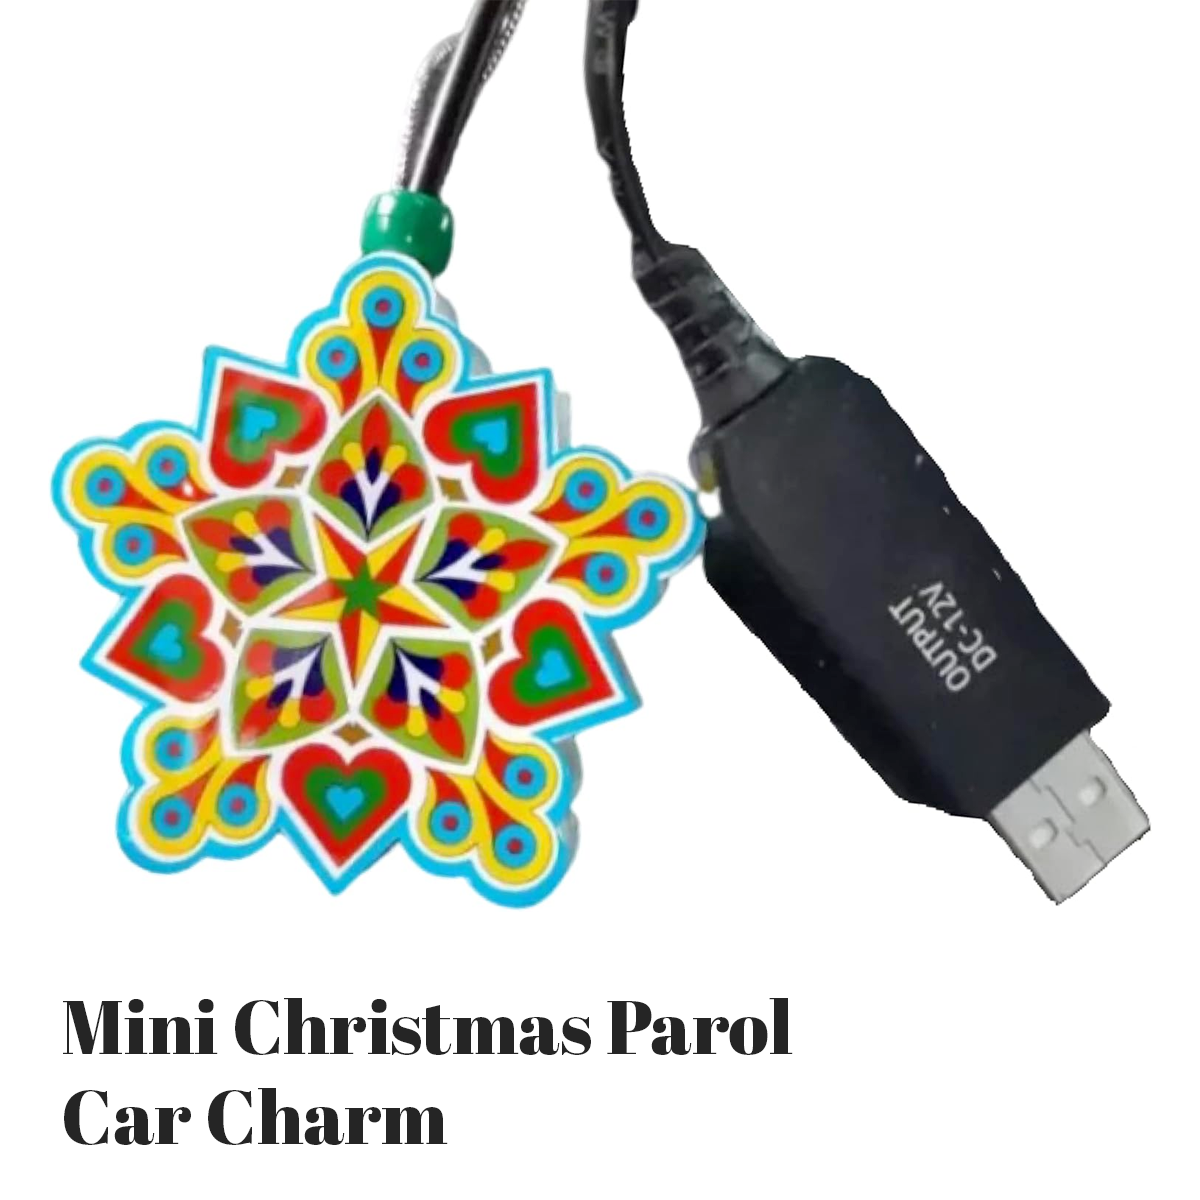 Mini Christmas Parol - Car Charm | Filipino Christmas Ornaments NZ